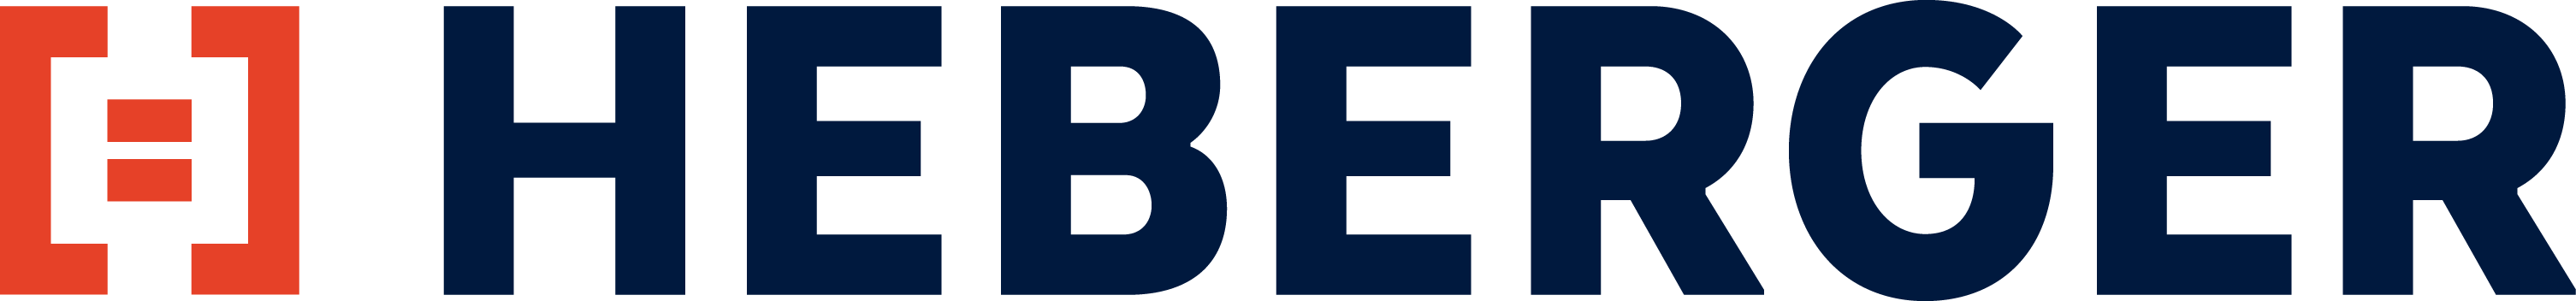 heberger logo